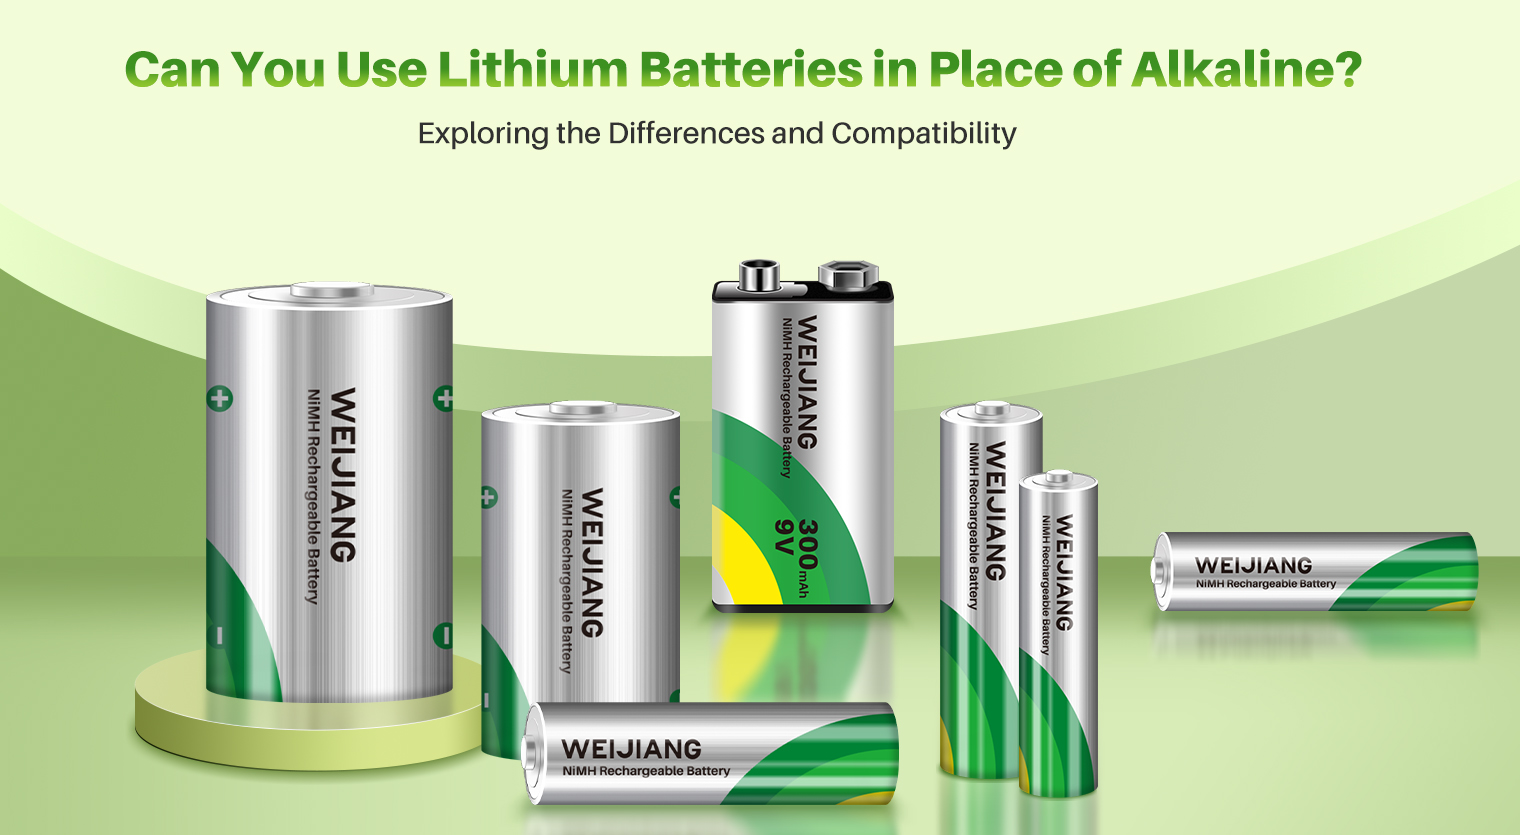 Možete li koristiti litijumske baterije umjesto alkalnih, istražujući razlike i kompatibilnost